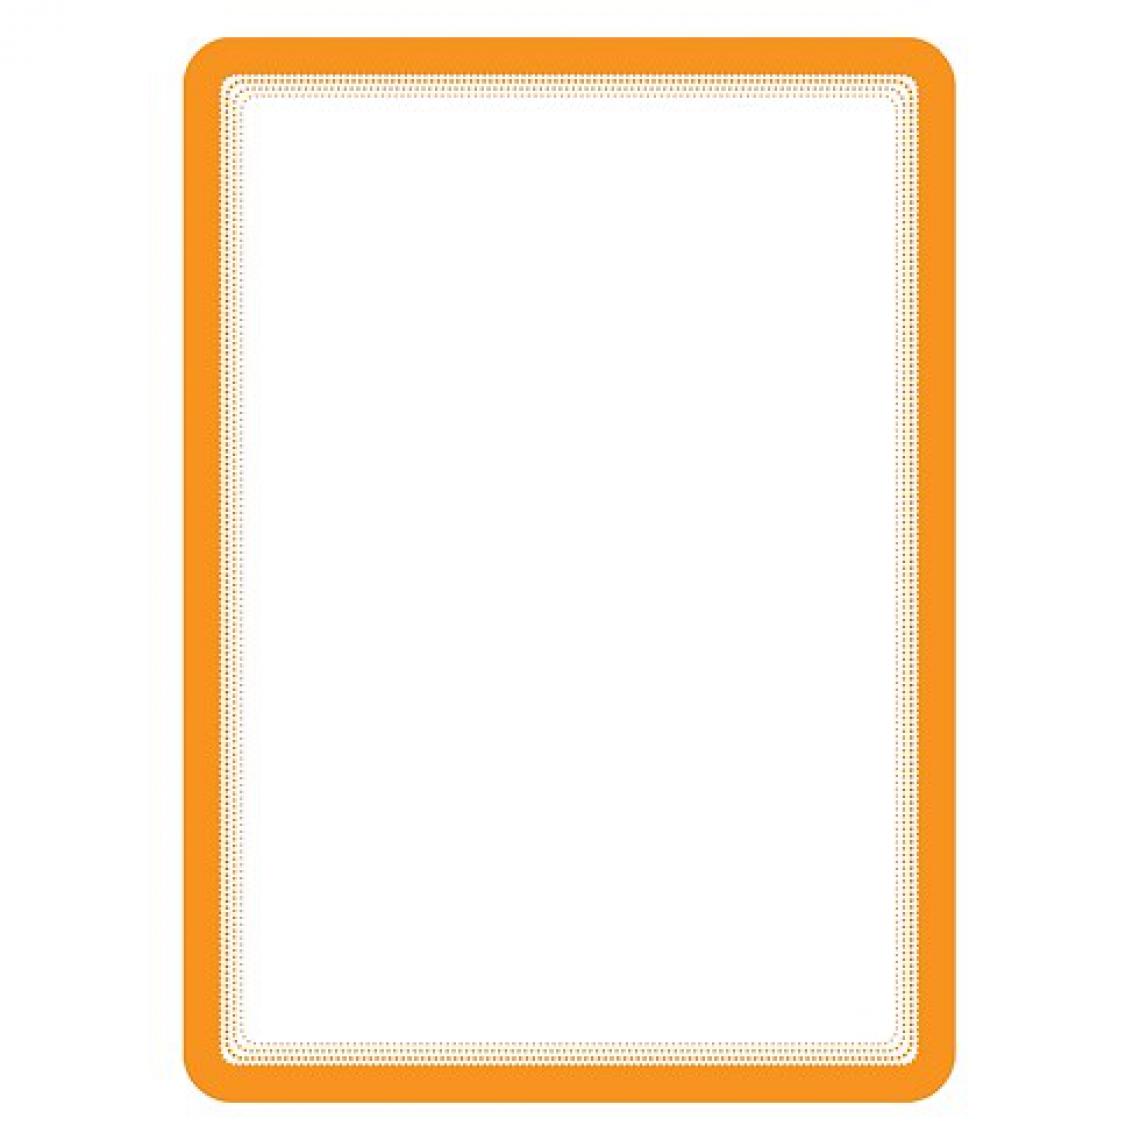 Tarifold - Pochette adhésive Magneto Tarifold orange - Poster A4 - Lot de 2 - Accessoires Bureau